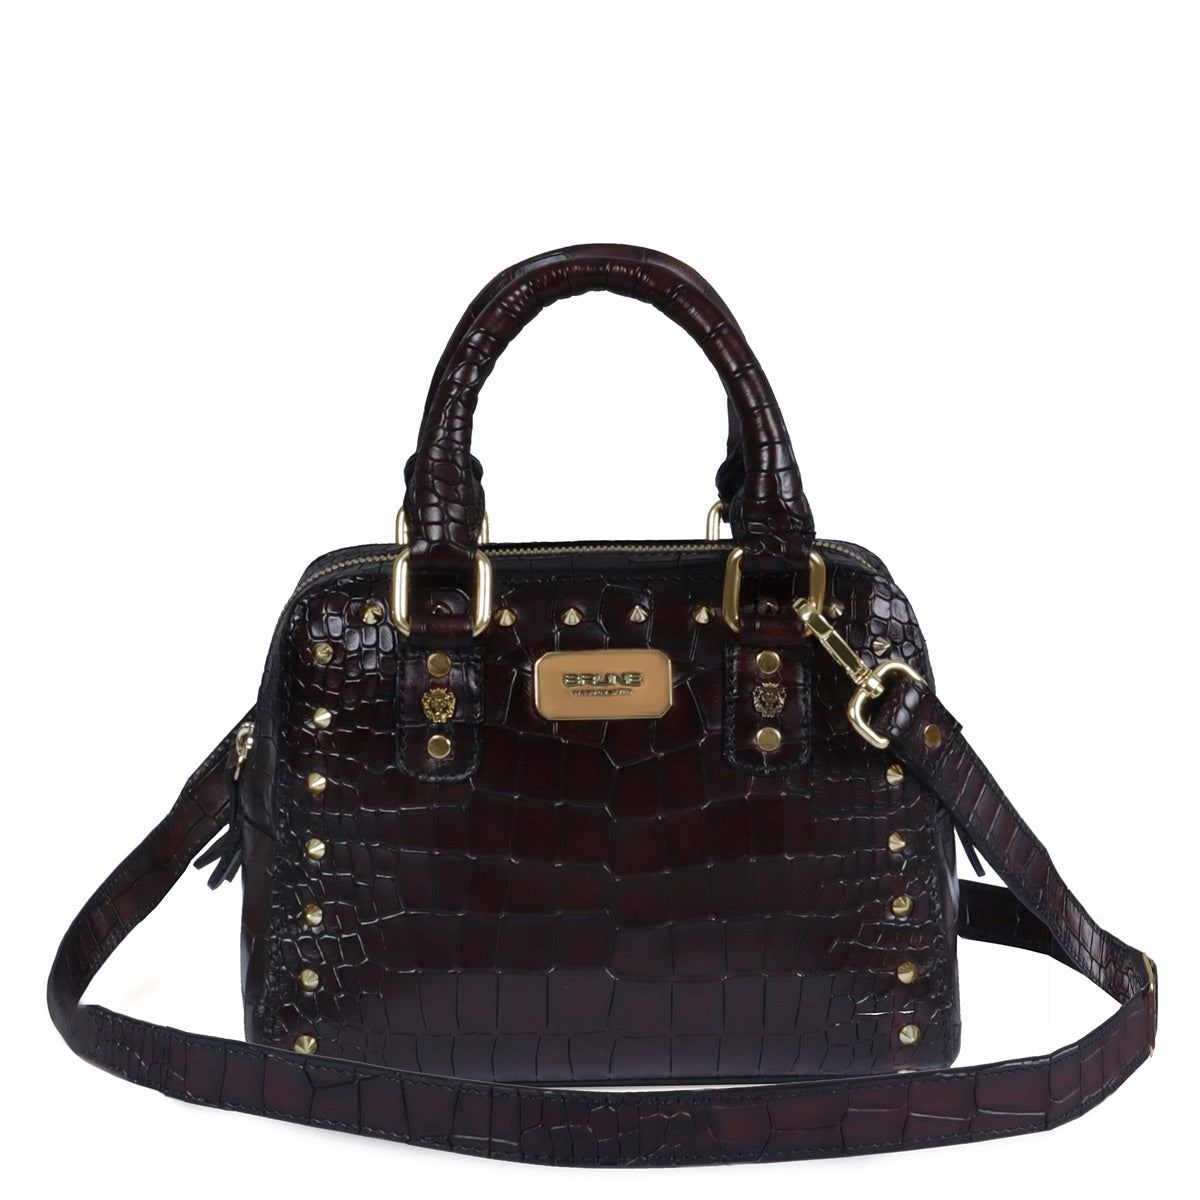 Ladies Handbag with Golden Stud & Removable Shoulder Strap